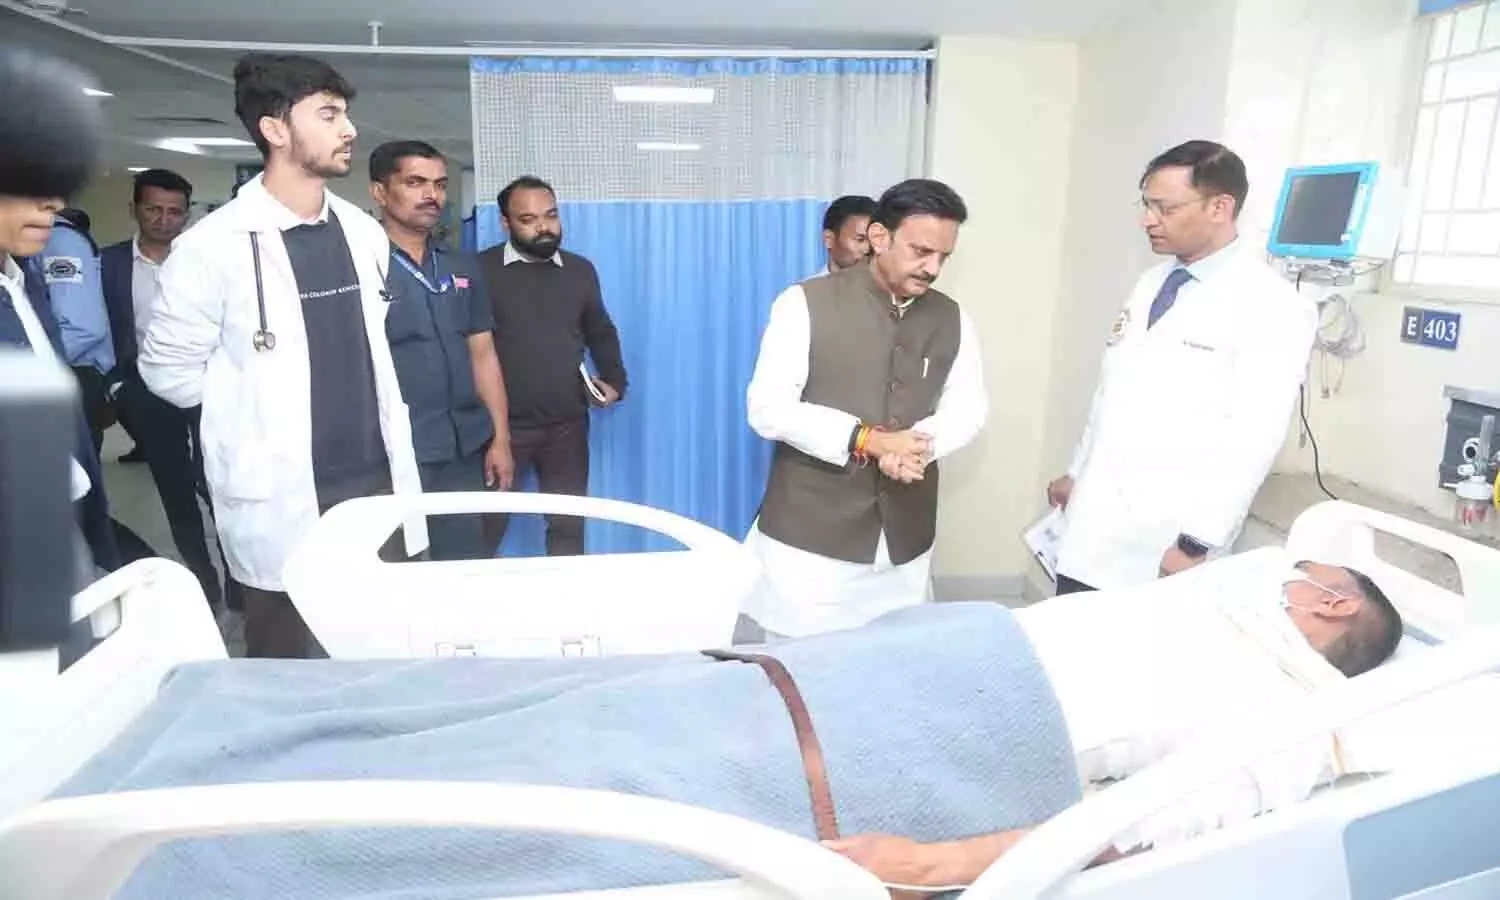 उप मुख्यमंत्री राजेंद्र शुक्ल पहुंचे हरदा दुर्घटना पीड़ित मरीज़ों से मिलने हमीदिया अस्पताल, परिजन को ढाढ़स बँधाया, समुचित उपचार के दिये निर्देश